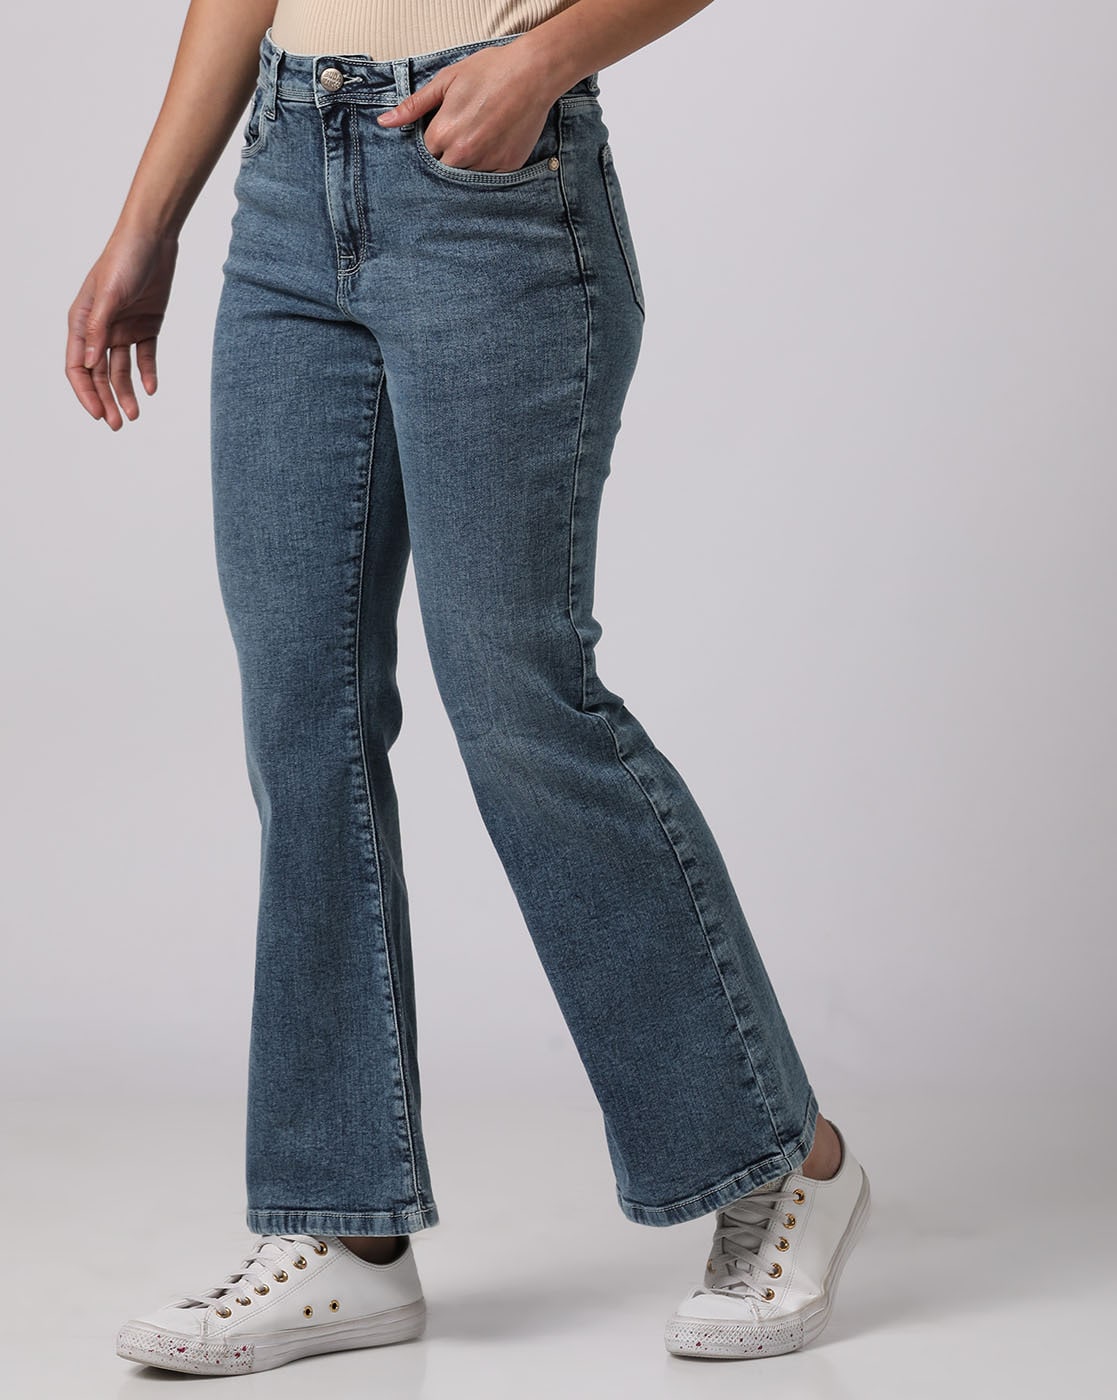 parallel Jeans for Women - Poshmark-calidas.vn